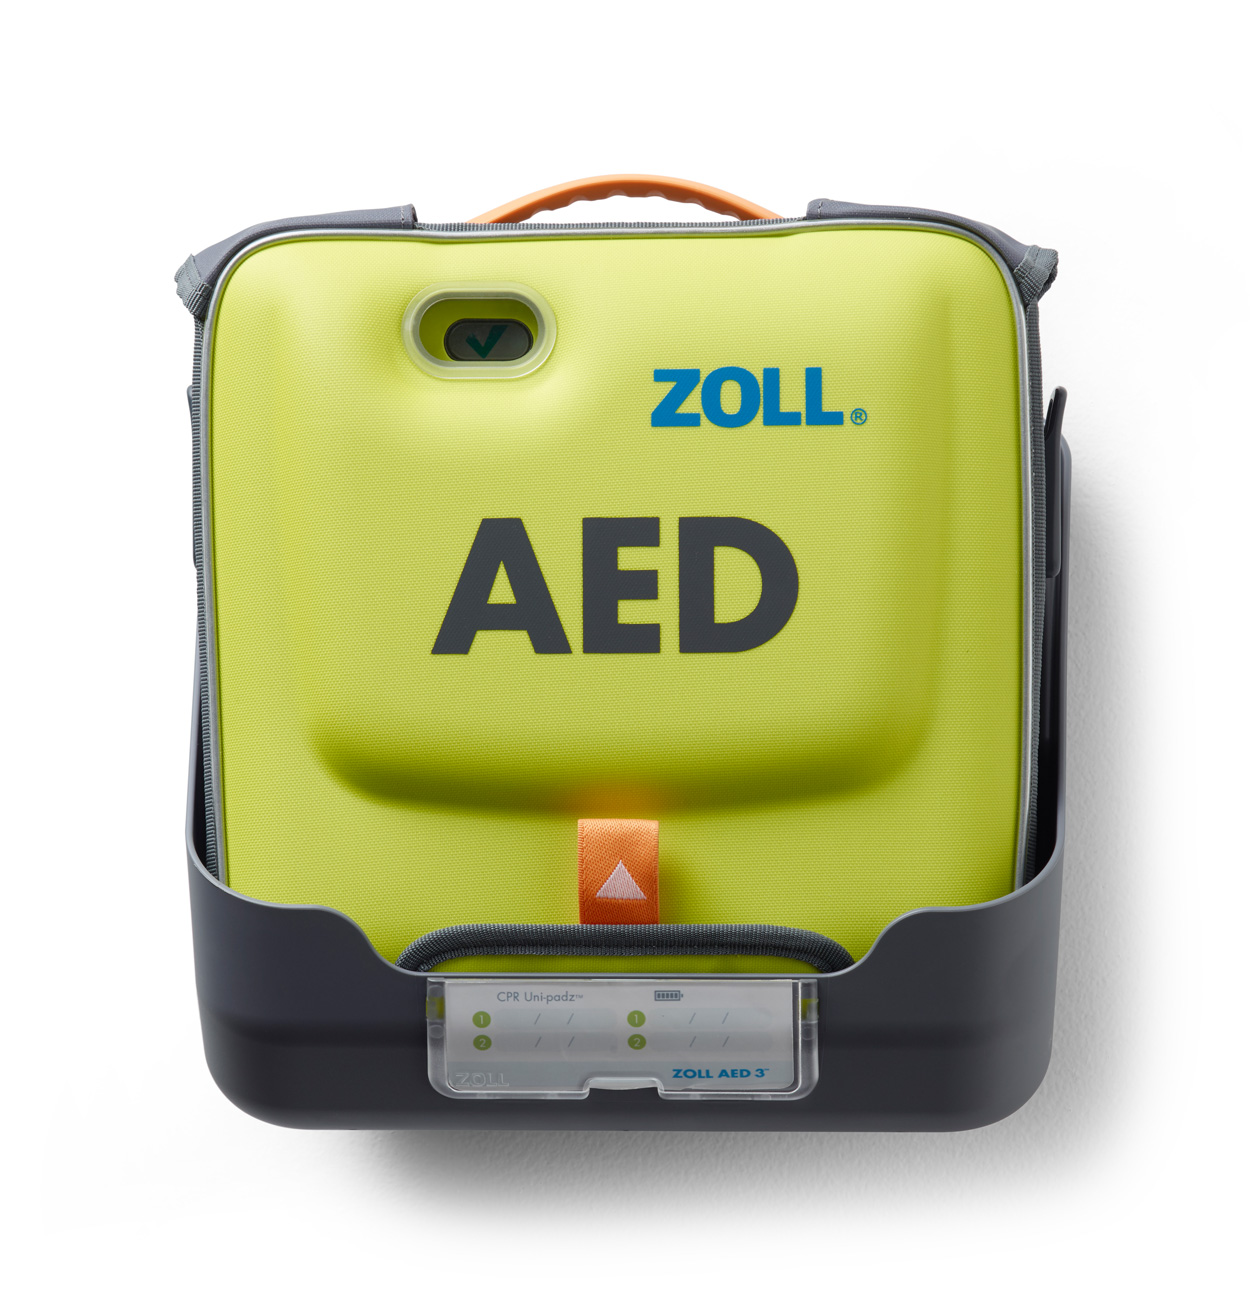 Universal-Wandhalterung für Zoll AED 3 in Tragetasche